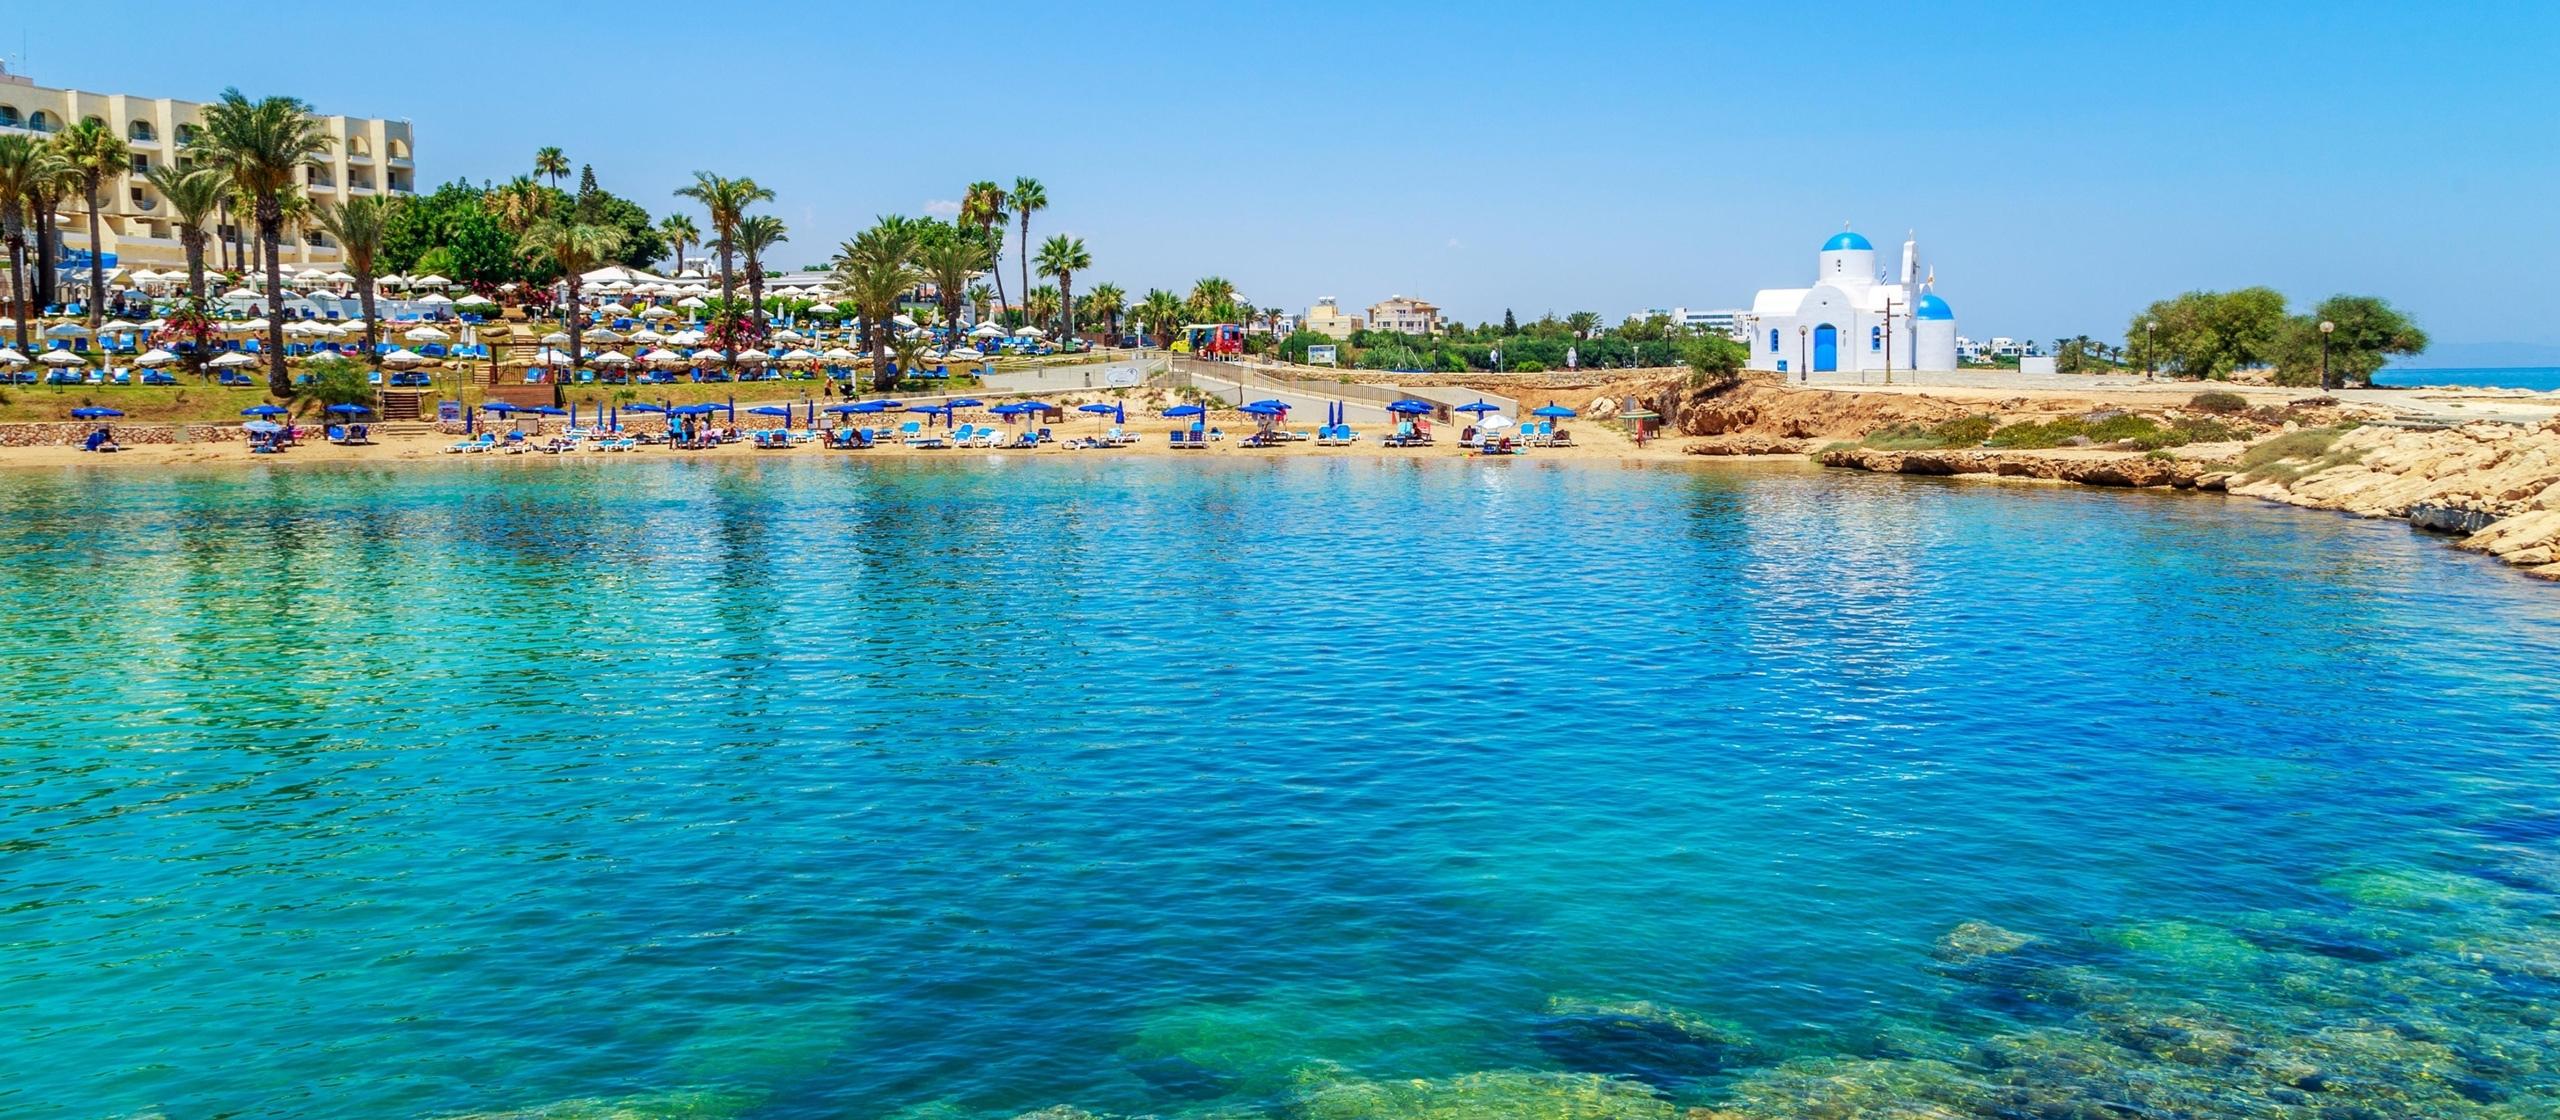 Cyprus Protaras Beaches